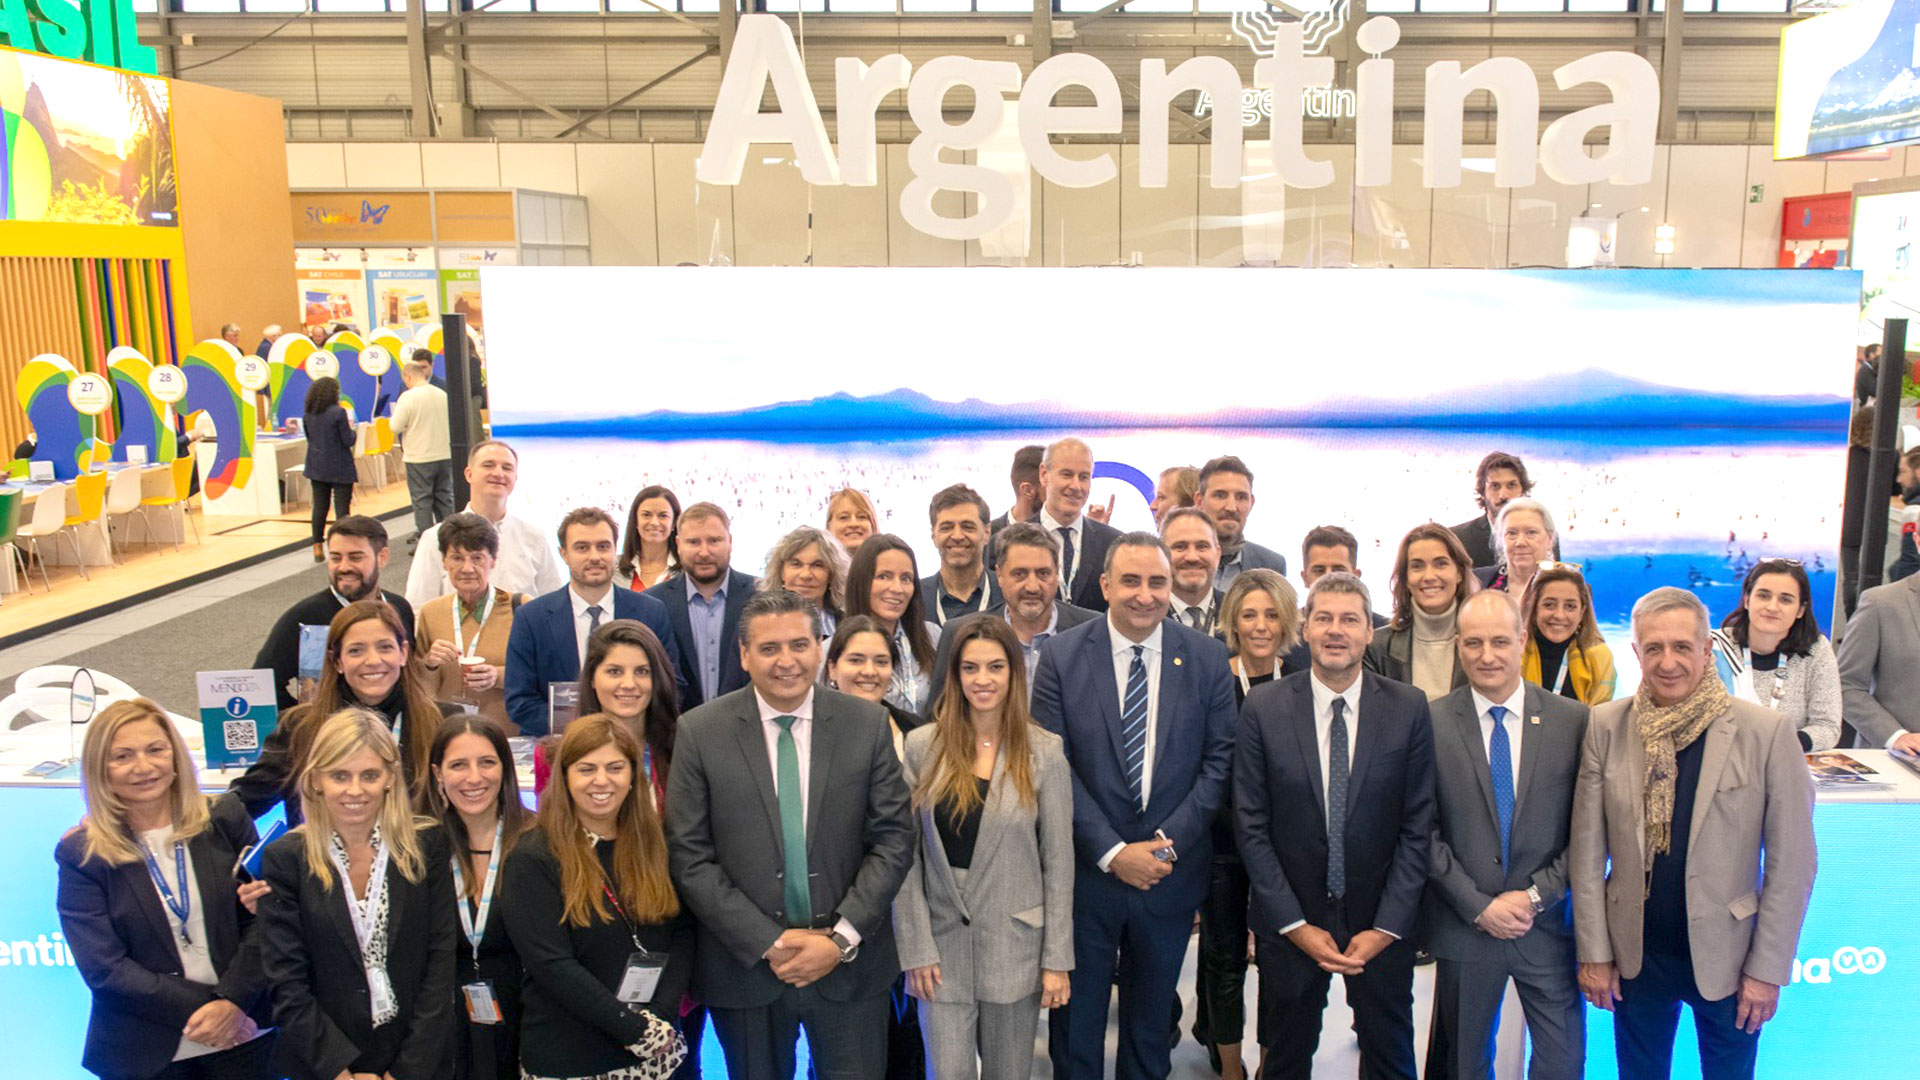 Foto oficial de la delegación argentina en el stand de ITB Berlin